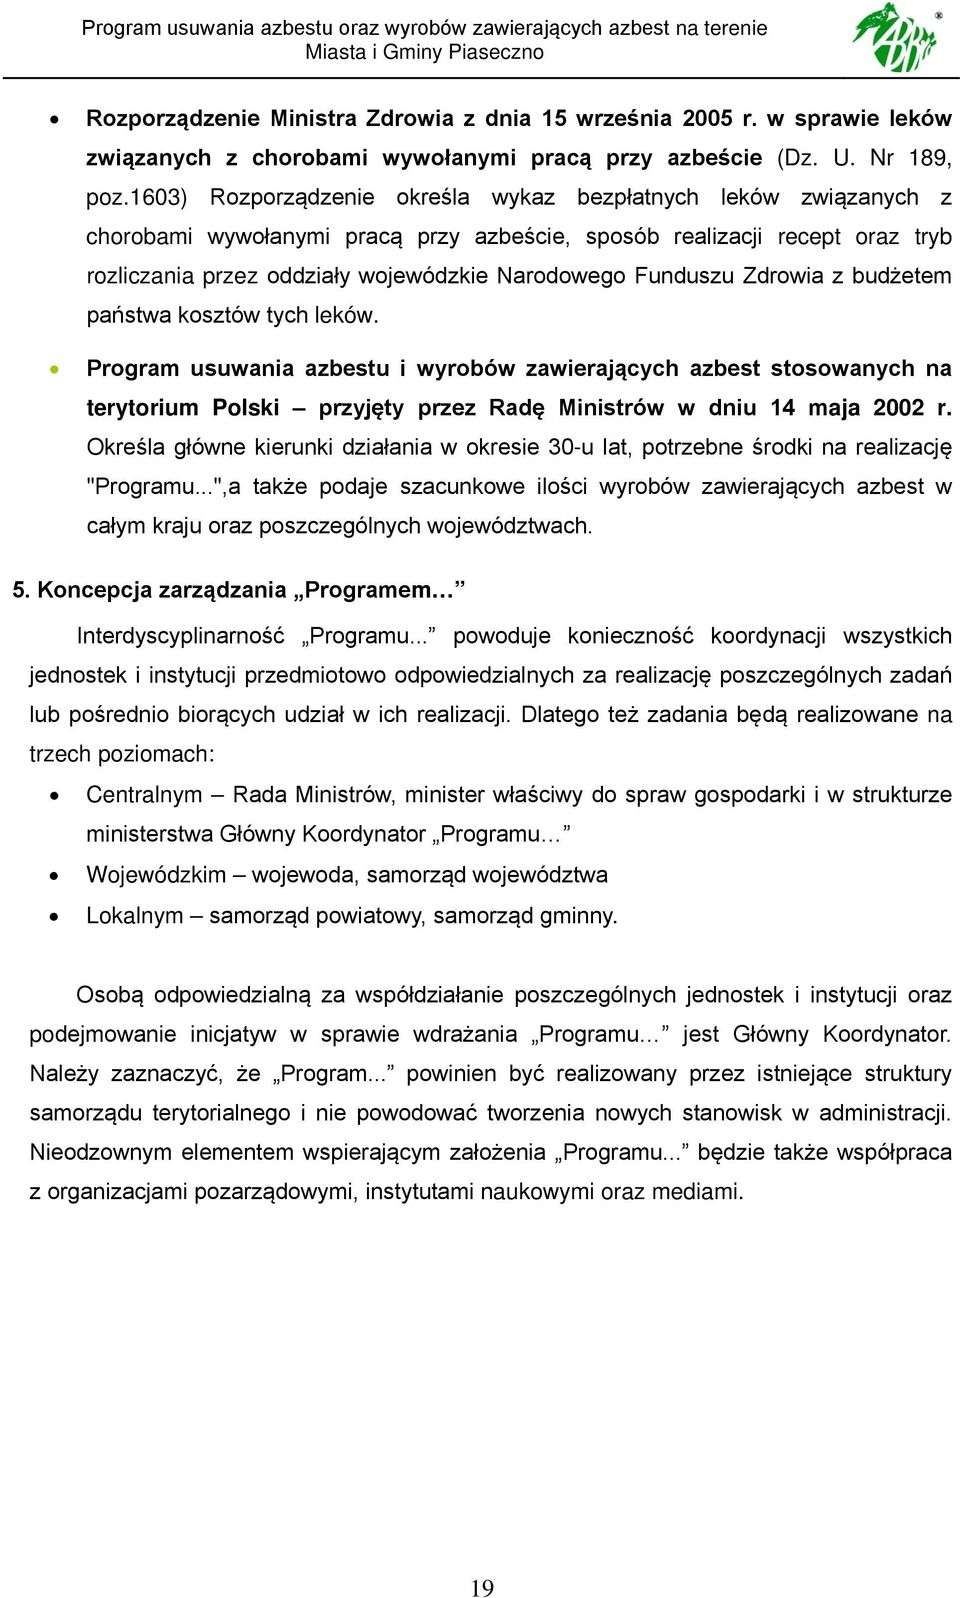 Funduszu Zdrowia z budżetem państwa kosztów tych leków. Program usuwania azbestu i wyrobów zawierających azbest stosowanych na terytorium Polski przyjęty przez Radę Ministrów w dniu 14 maja 2002 r.